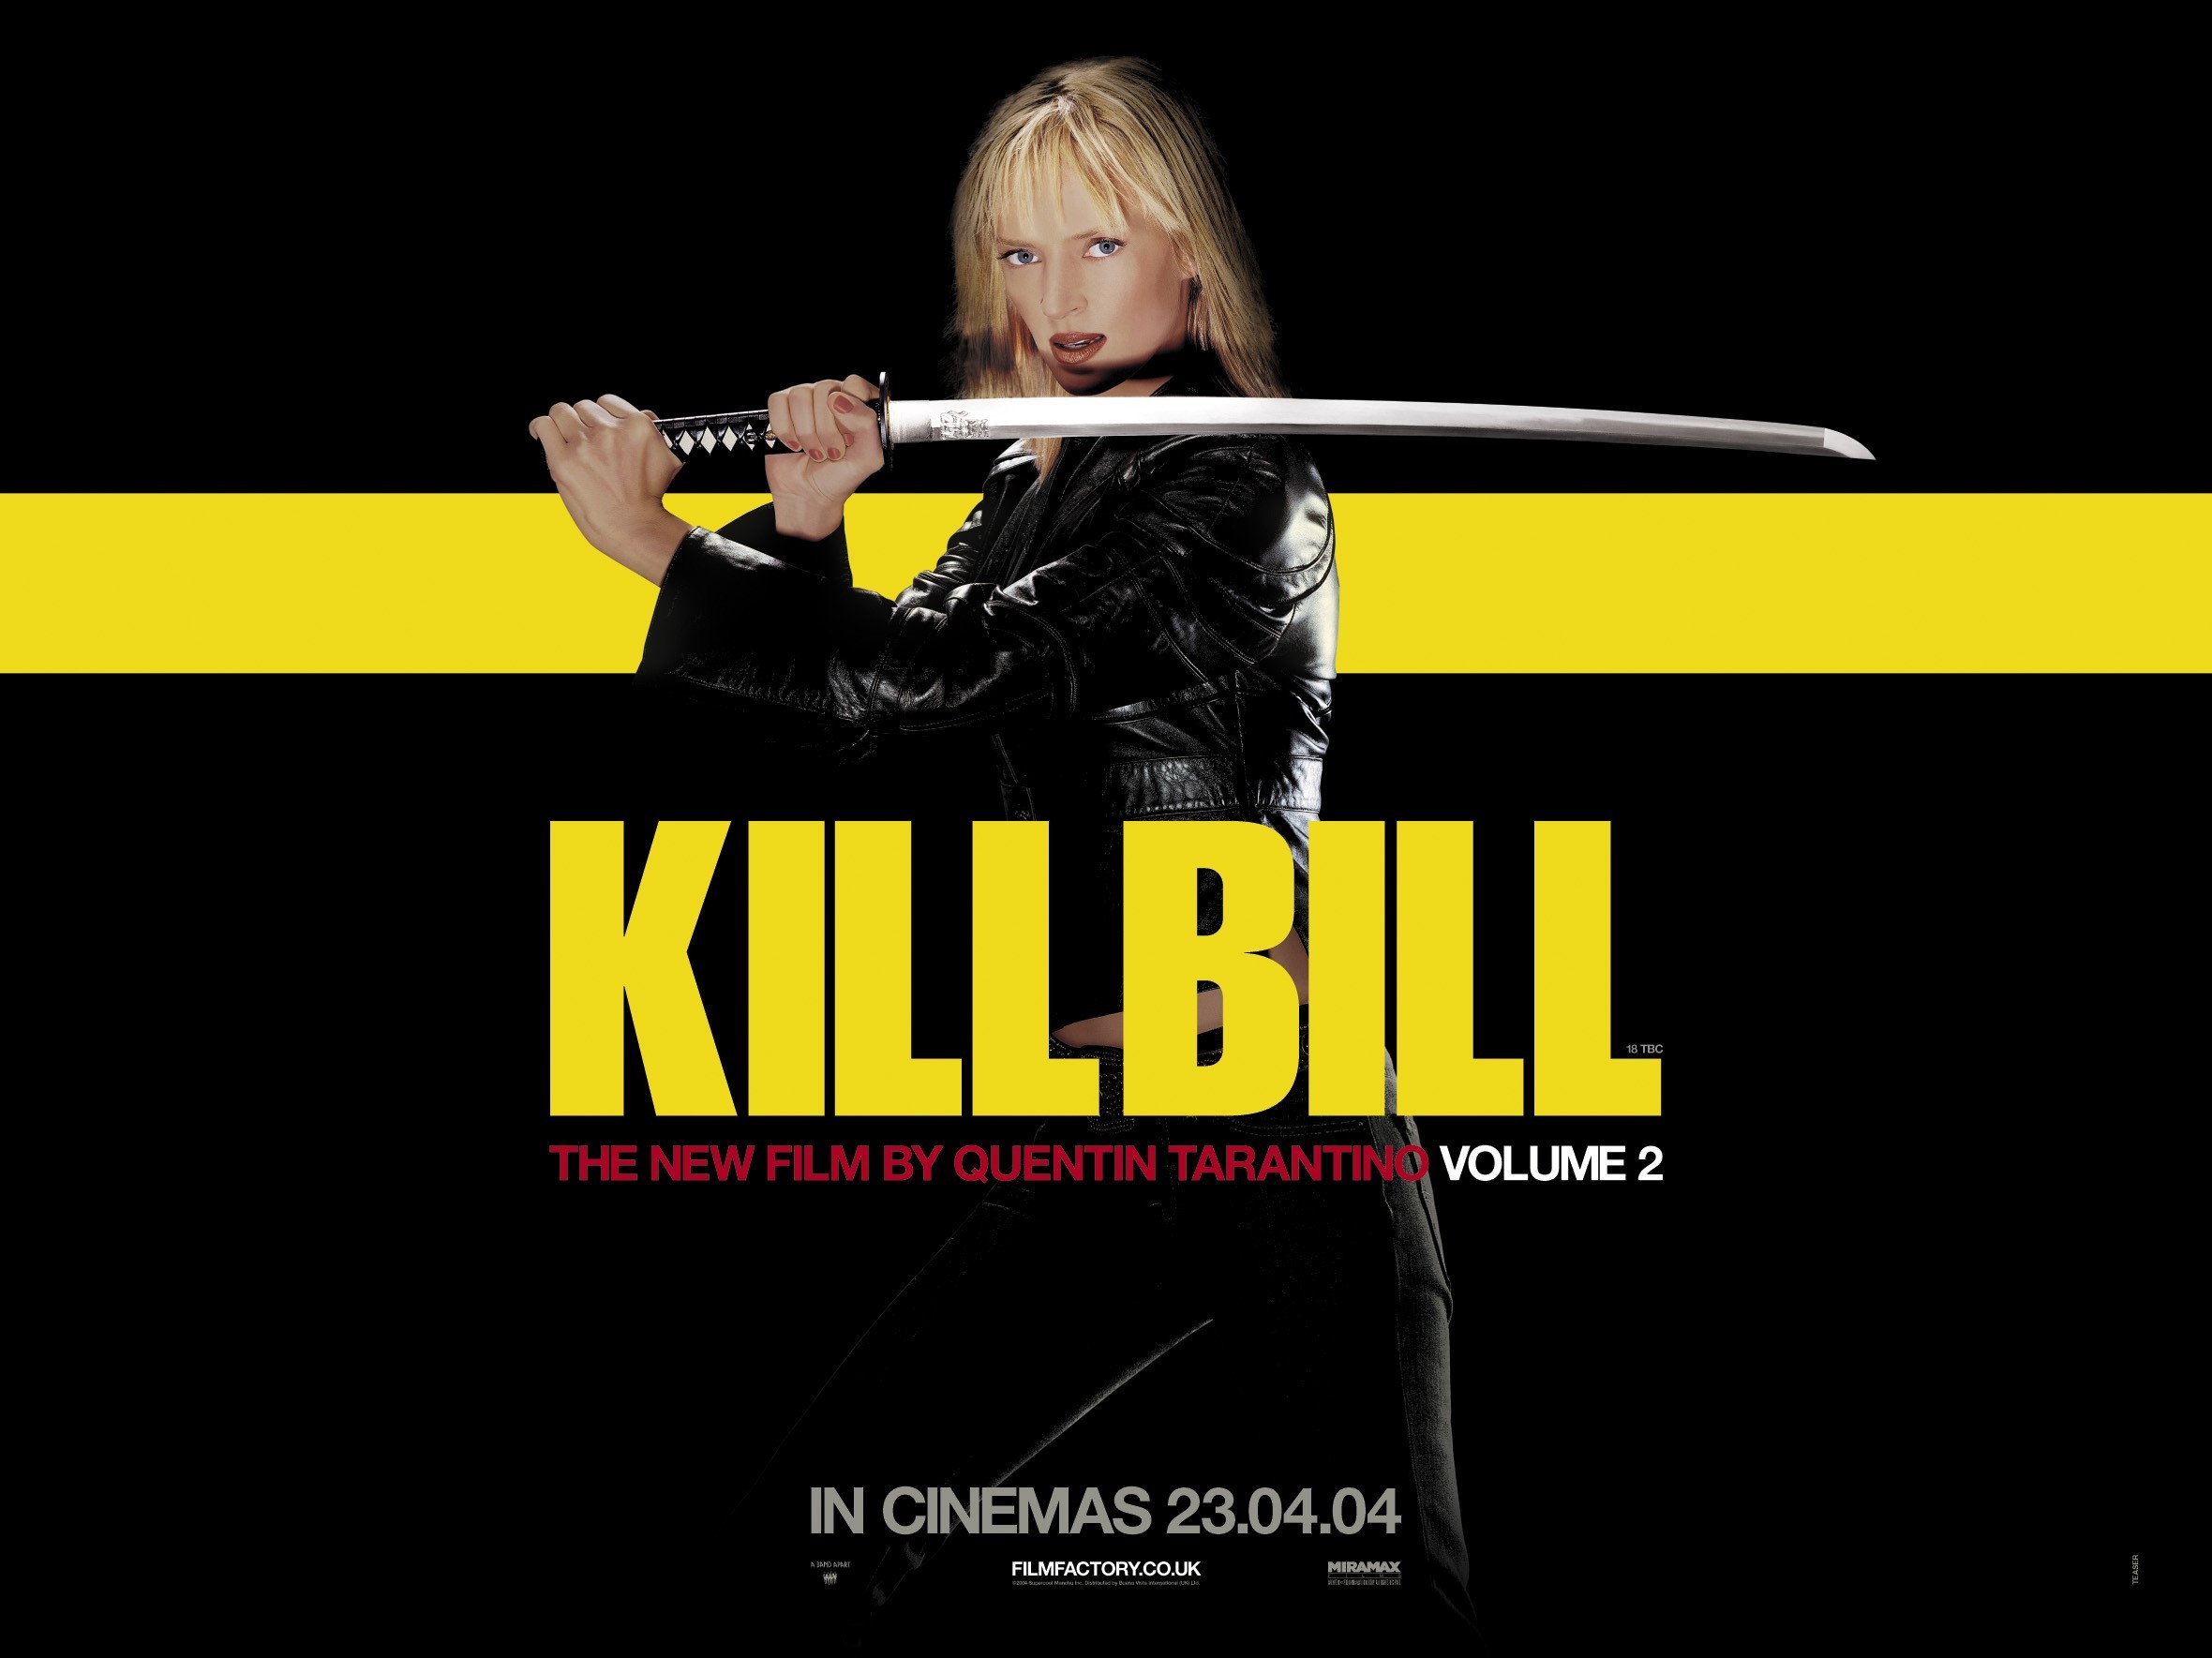 Kill Bill Vol 2 HD Wallpaper Background Image 2360x1769 2360x1769